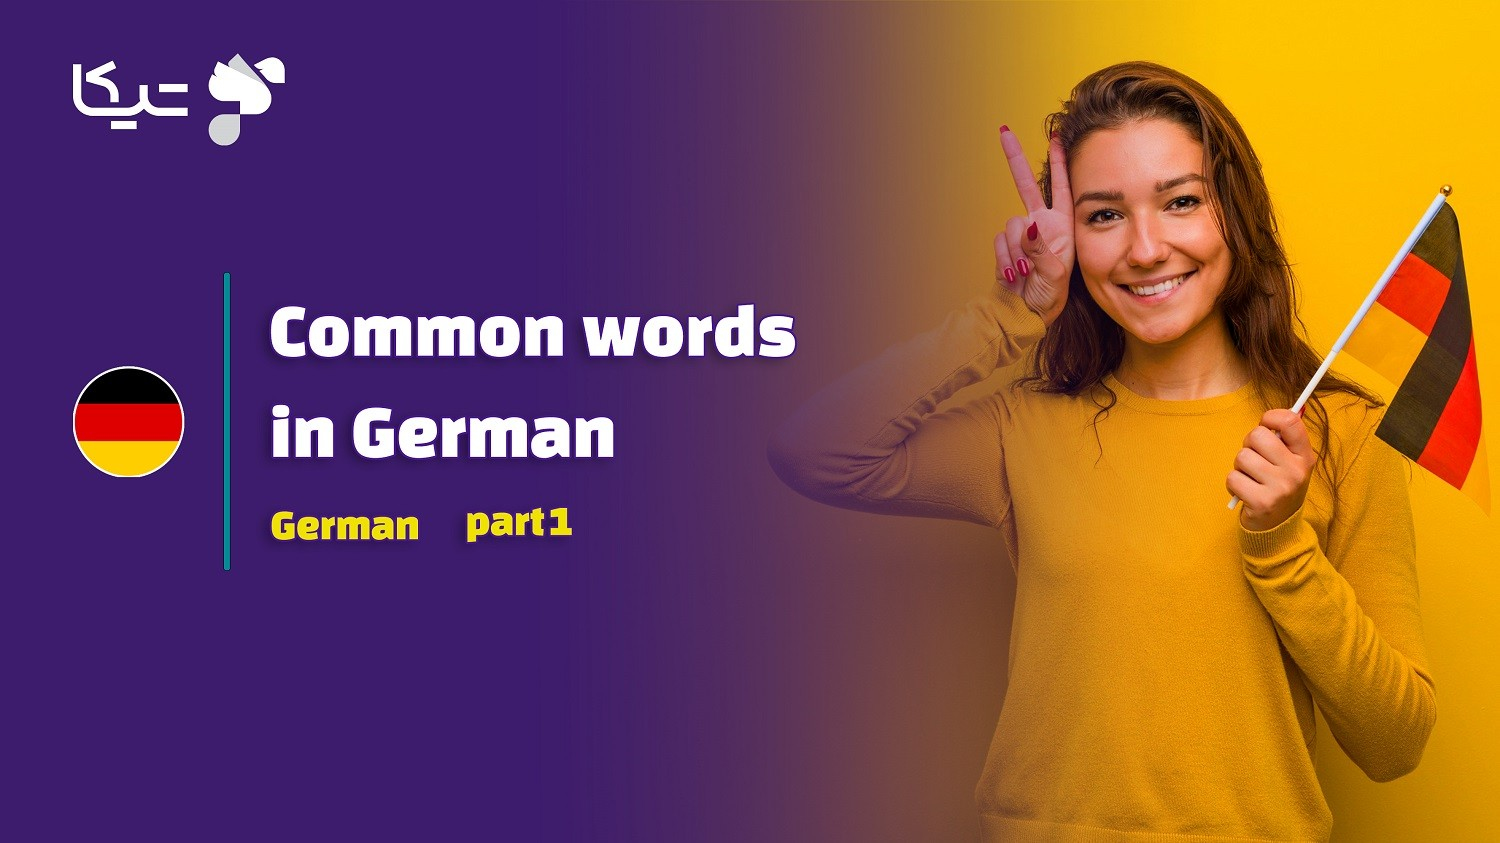 پرکاربرد ترین کلمات و لغات در زبان آلمانی - قسمت اول